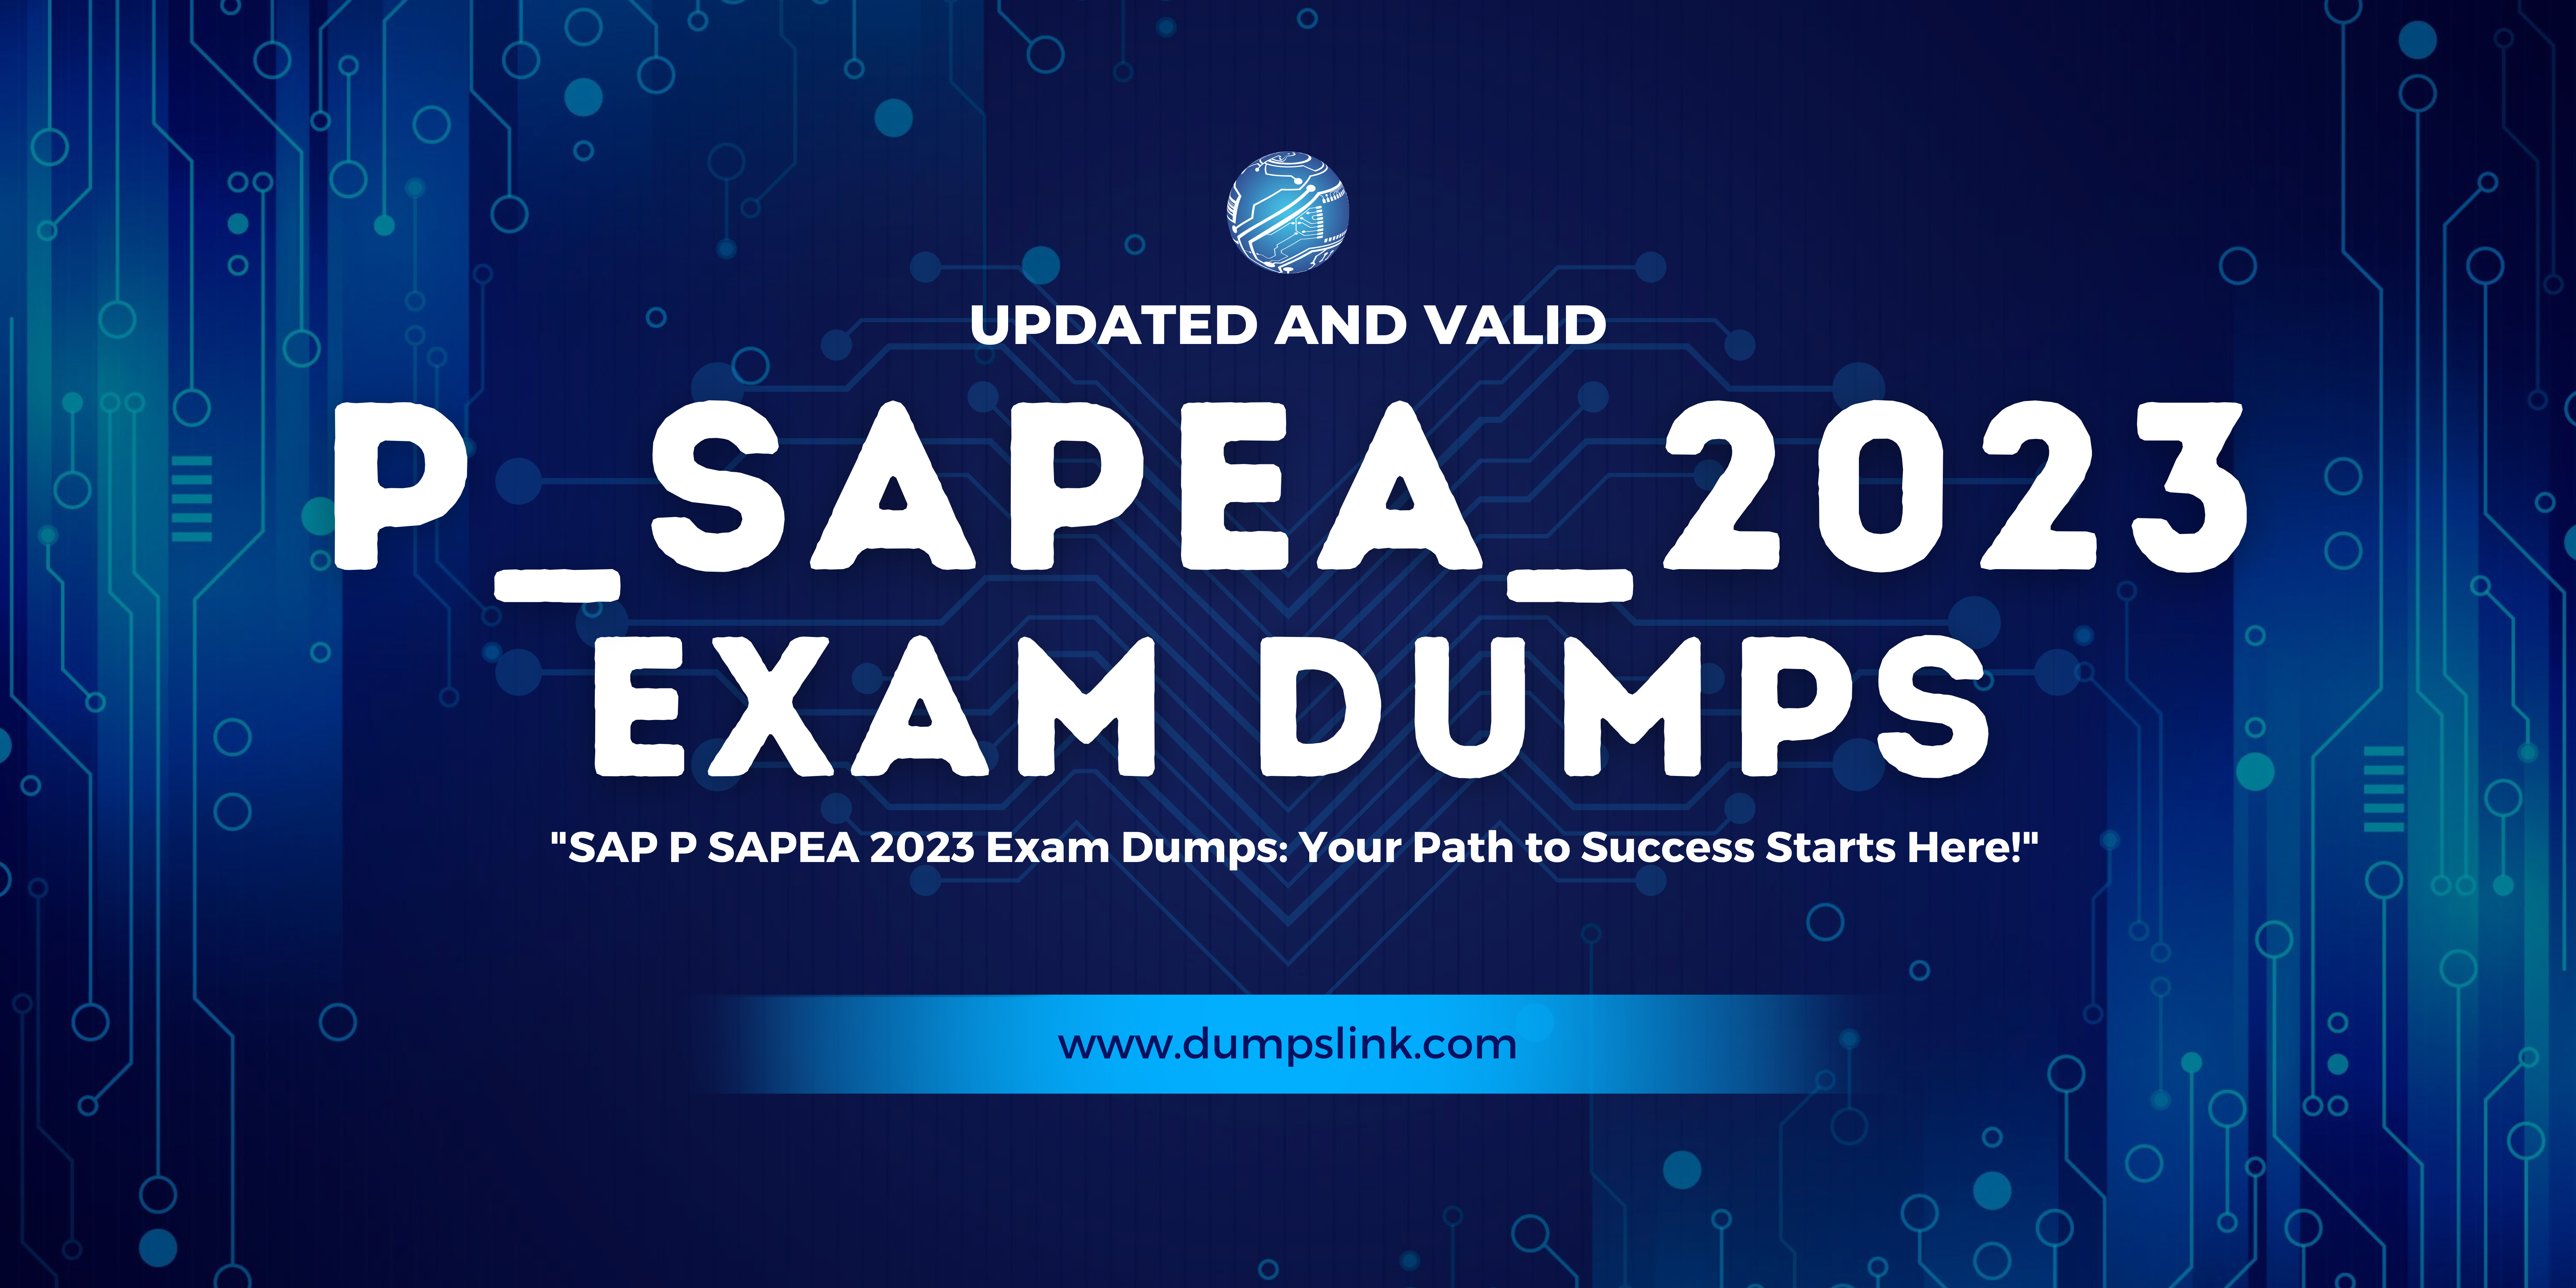 P_SAPEA_2023 exam dumps